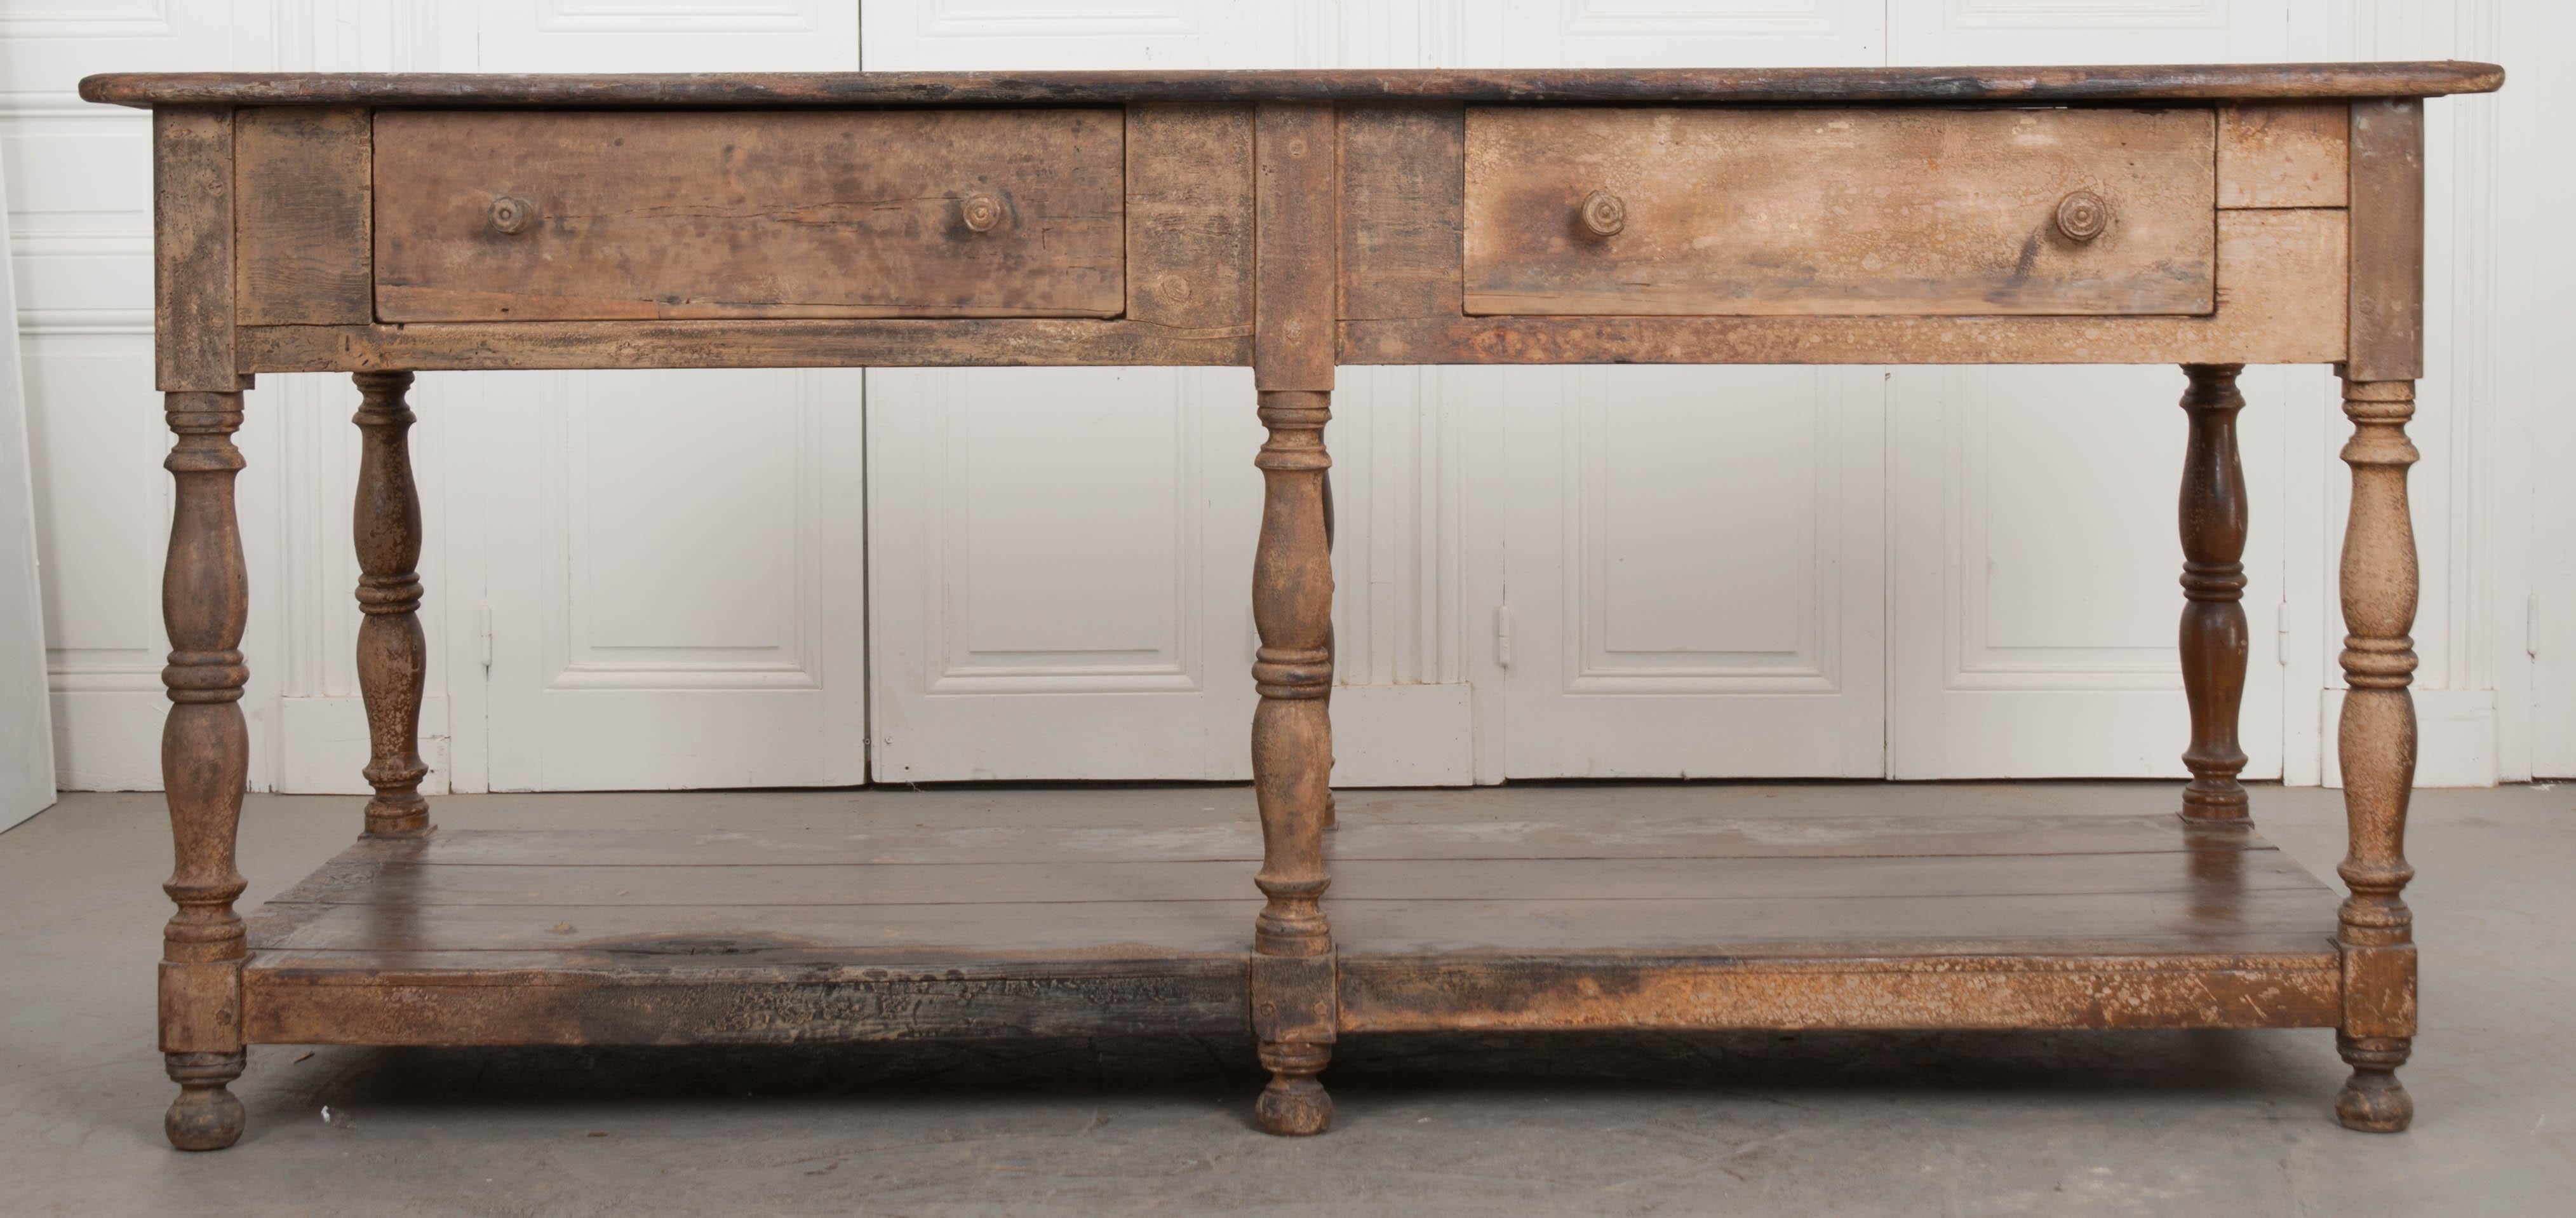 Ein großer:: tiefer Vorhangtisch:: hergestellt in Frankreich:: um 1890. Der Tisch ist mit zwei großen Schubladen ausgestattet:: die reichlich Stauraum bieten und nicht sichtbar sind. Das darunter liegende Regal bietet Platz für zusätzlichen Stauraum